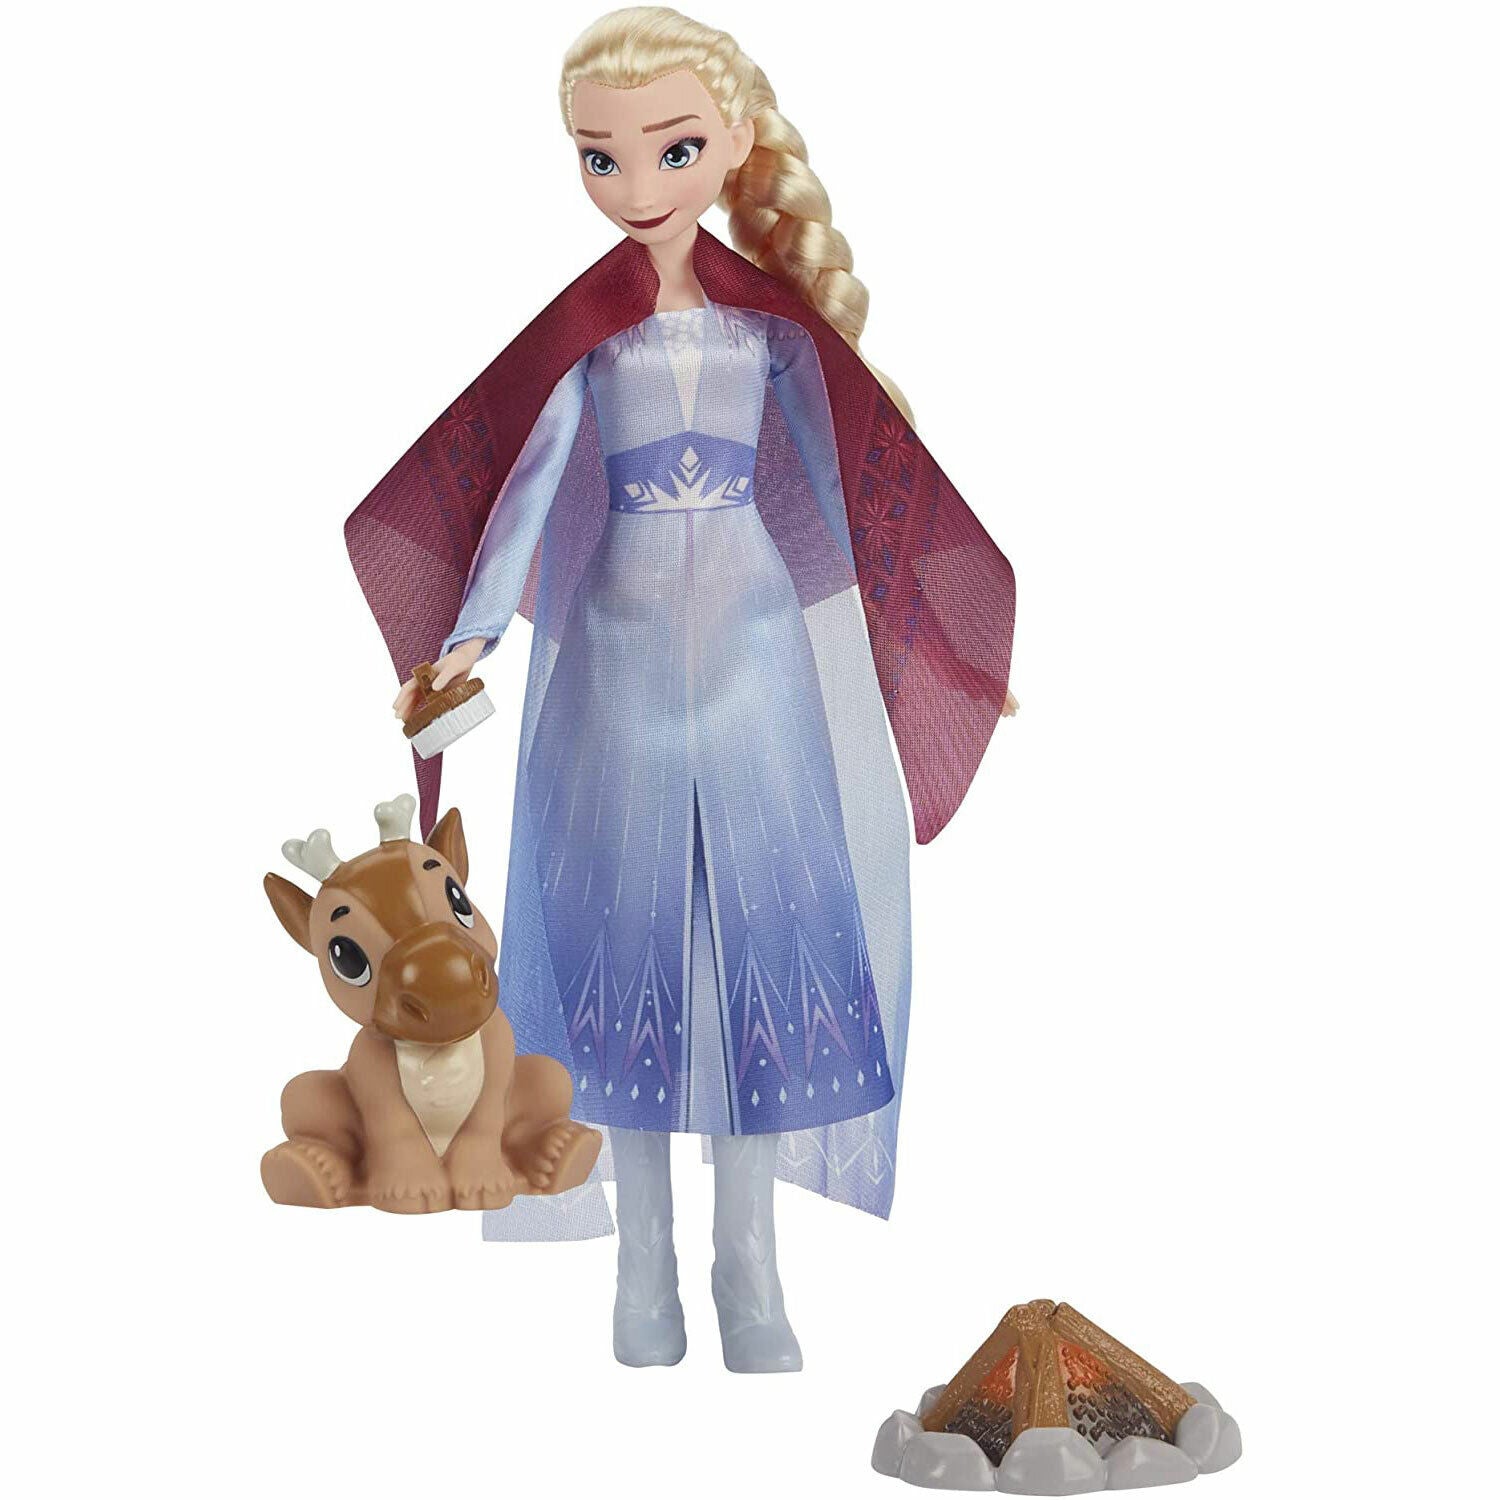 Disney Frozen 2 Elsa Fashion Doll with Baby Reindeer - Campfire Friend Set